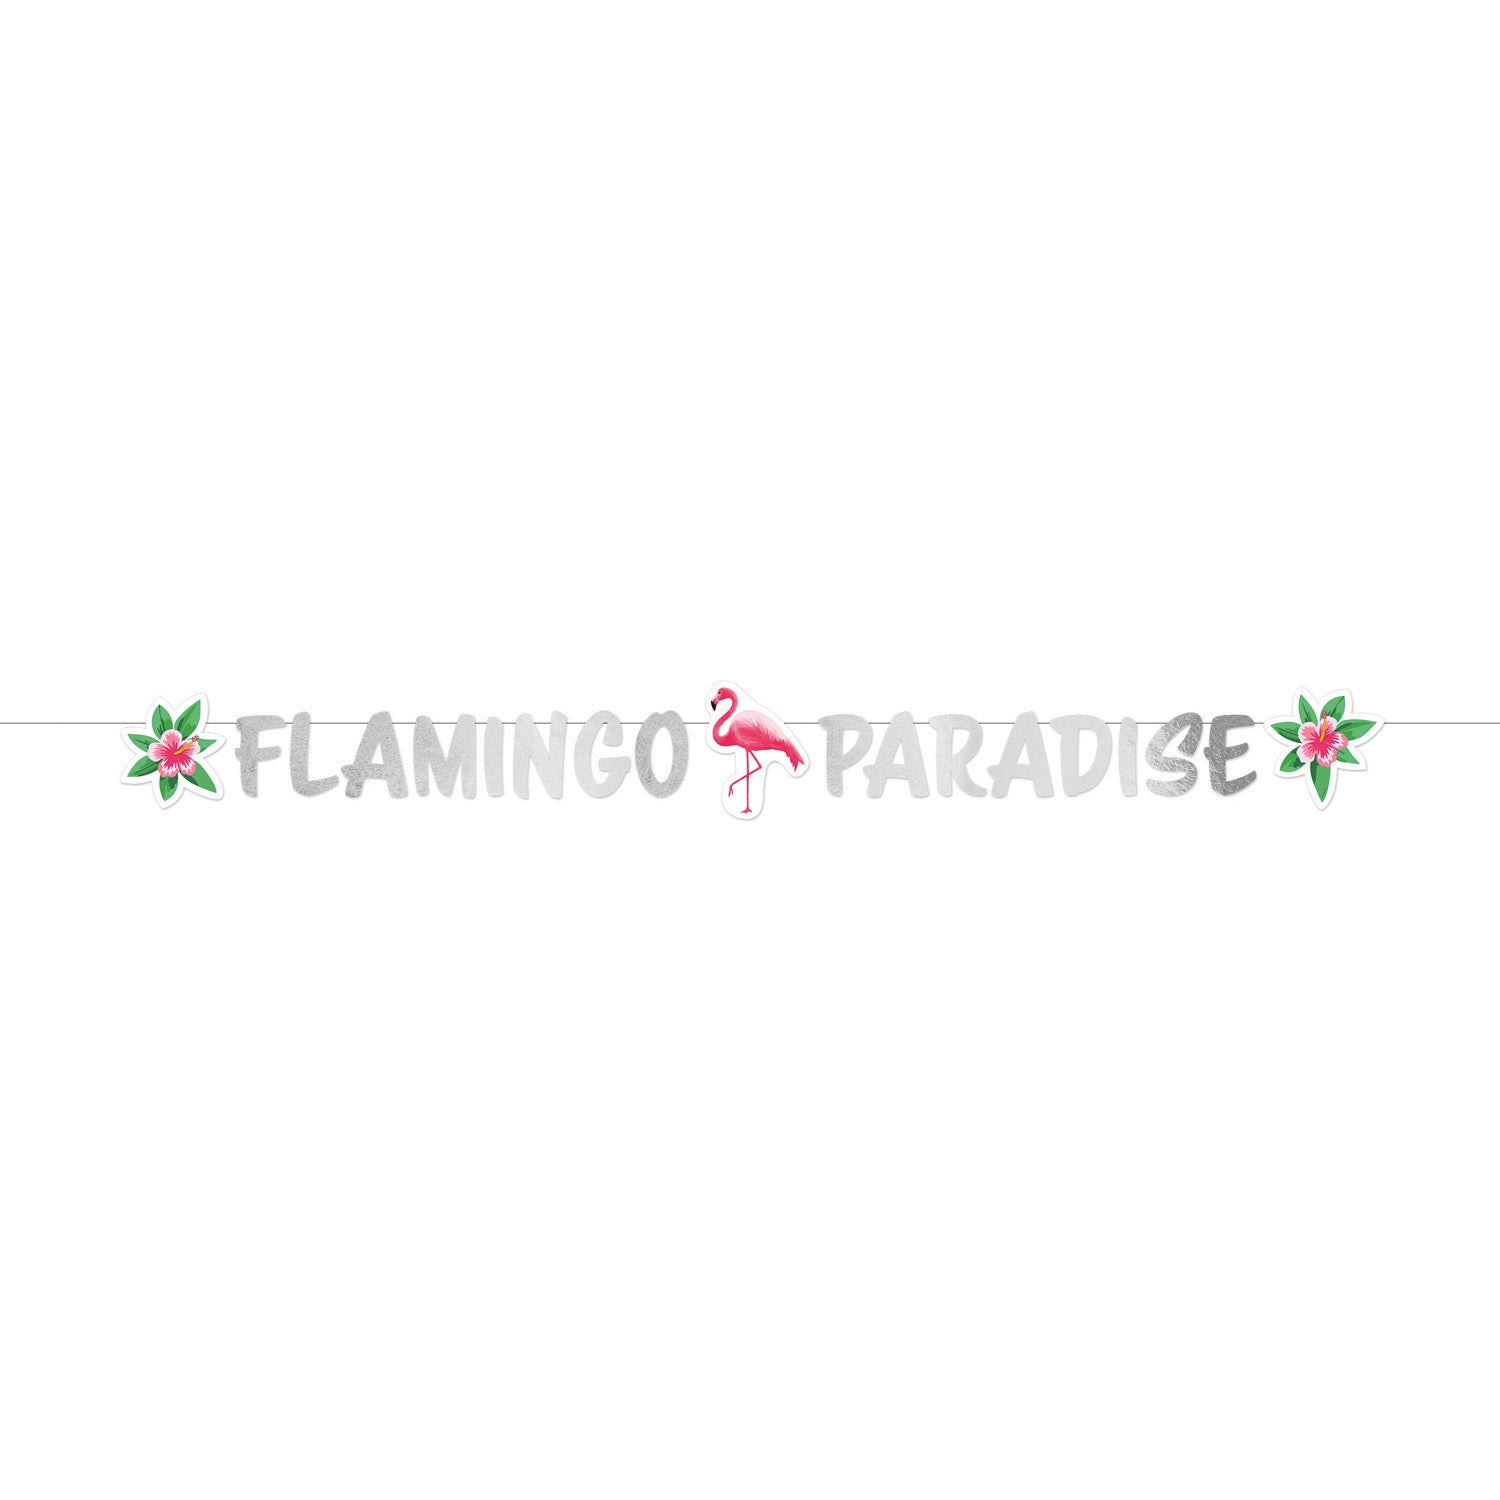 Flamingo Paradise Letter Banner 135cm